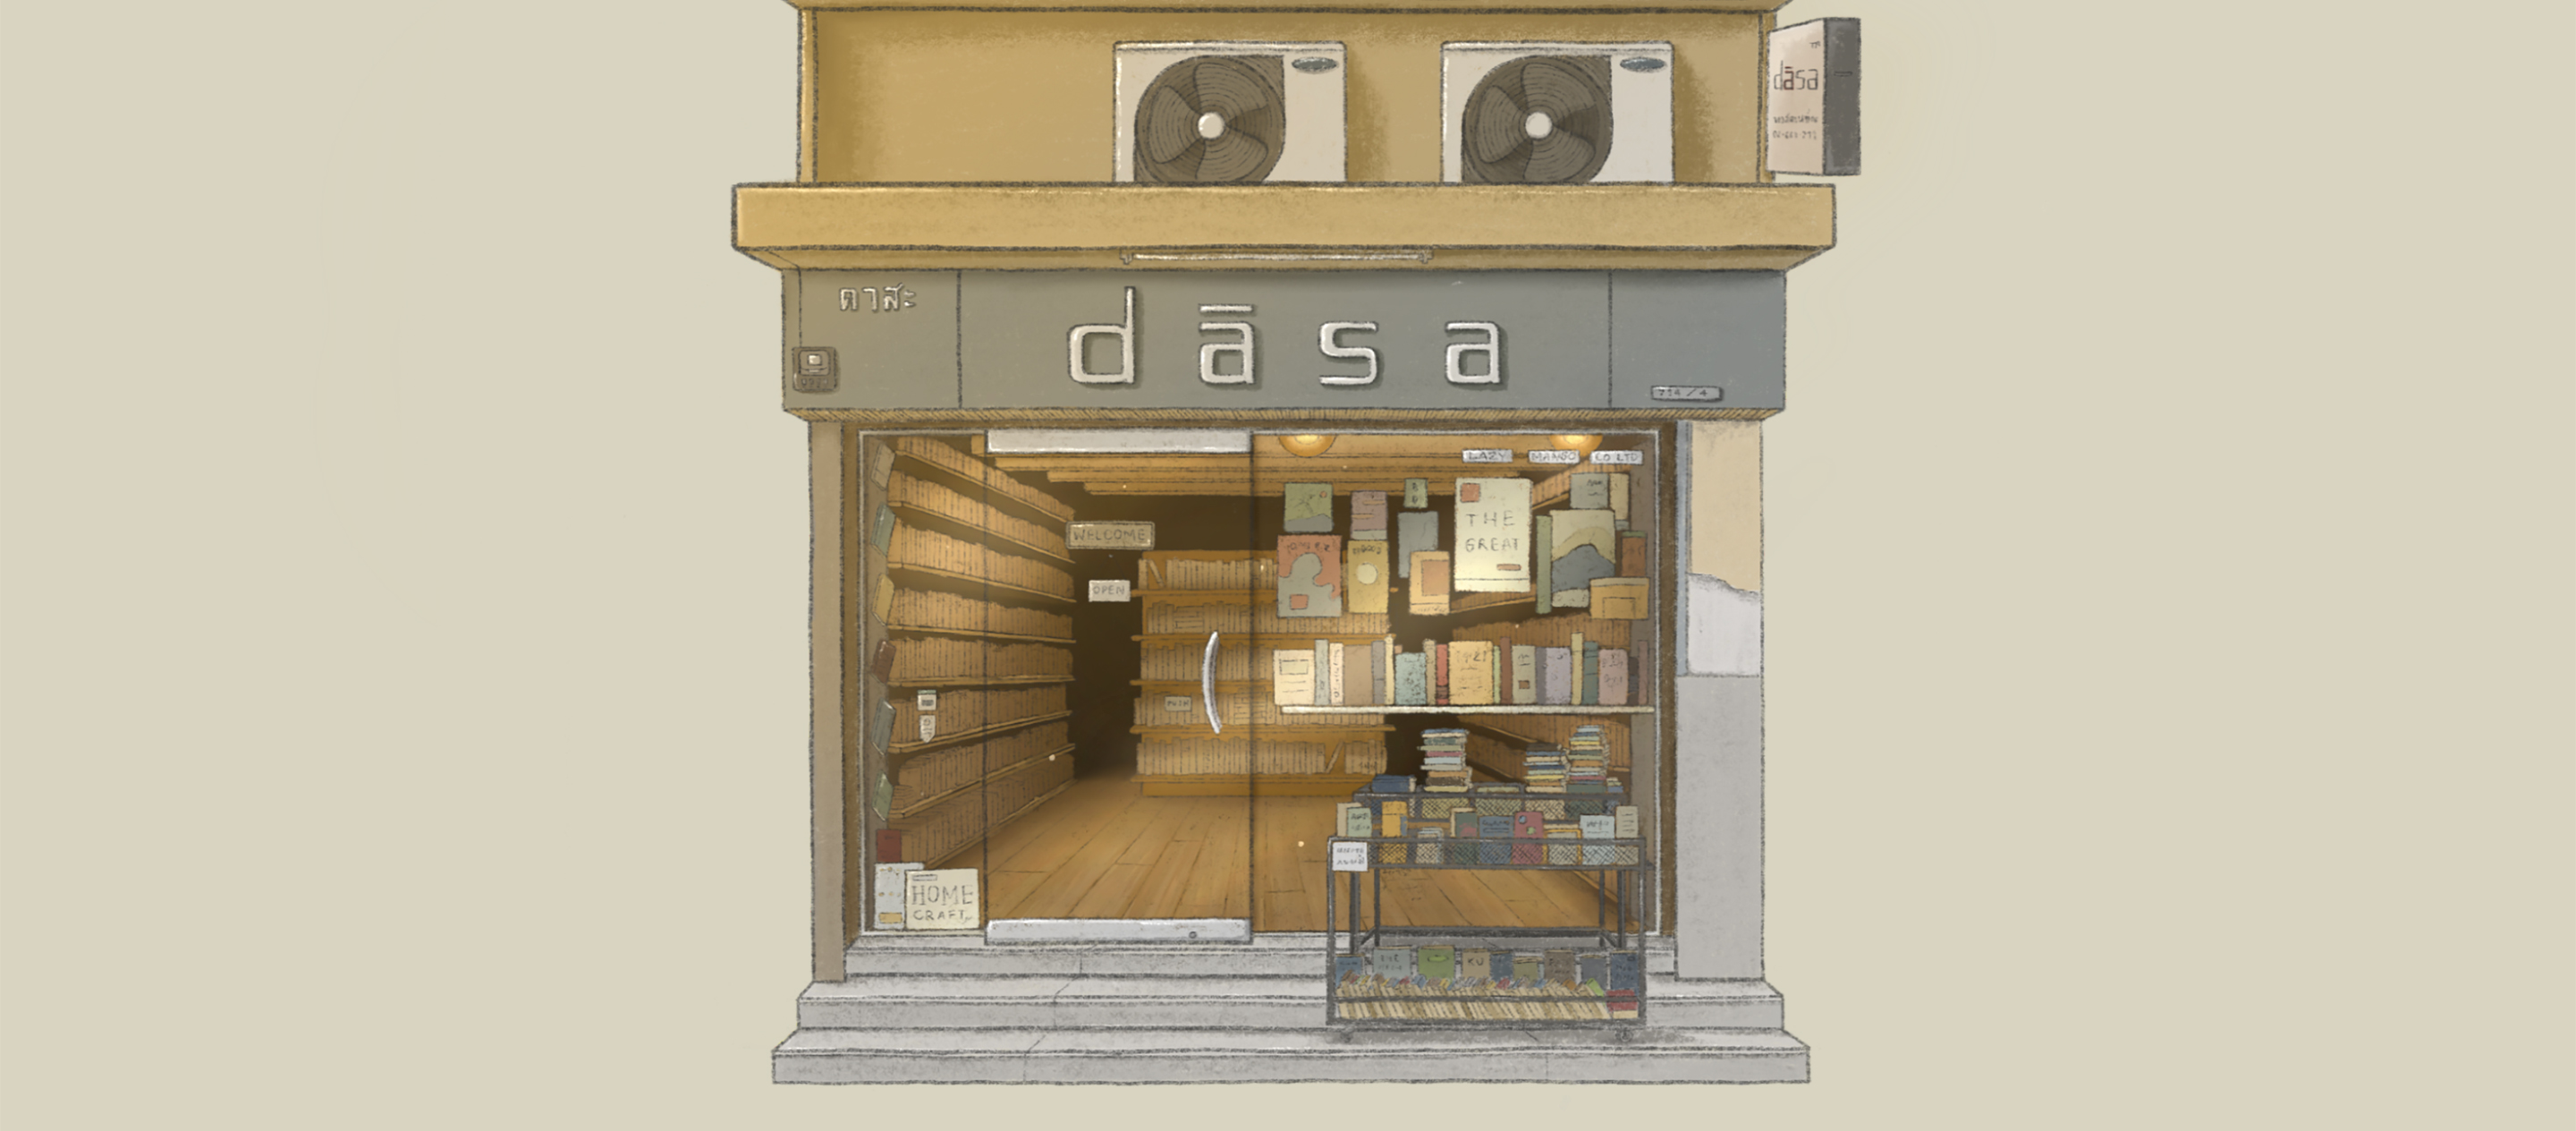 Dasa ร้านขุมทรัพย์ของทาสรักหนังสือมือสองและซีดีเพลงเก่าย่านสุขุมวิท